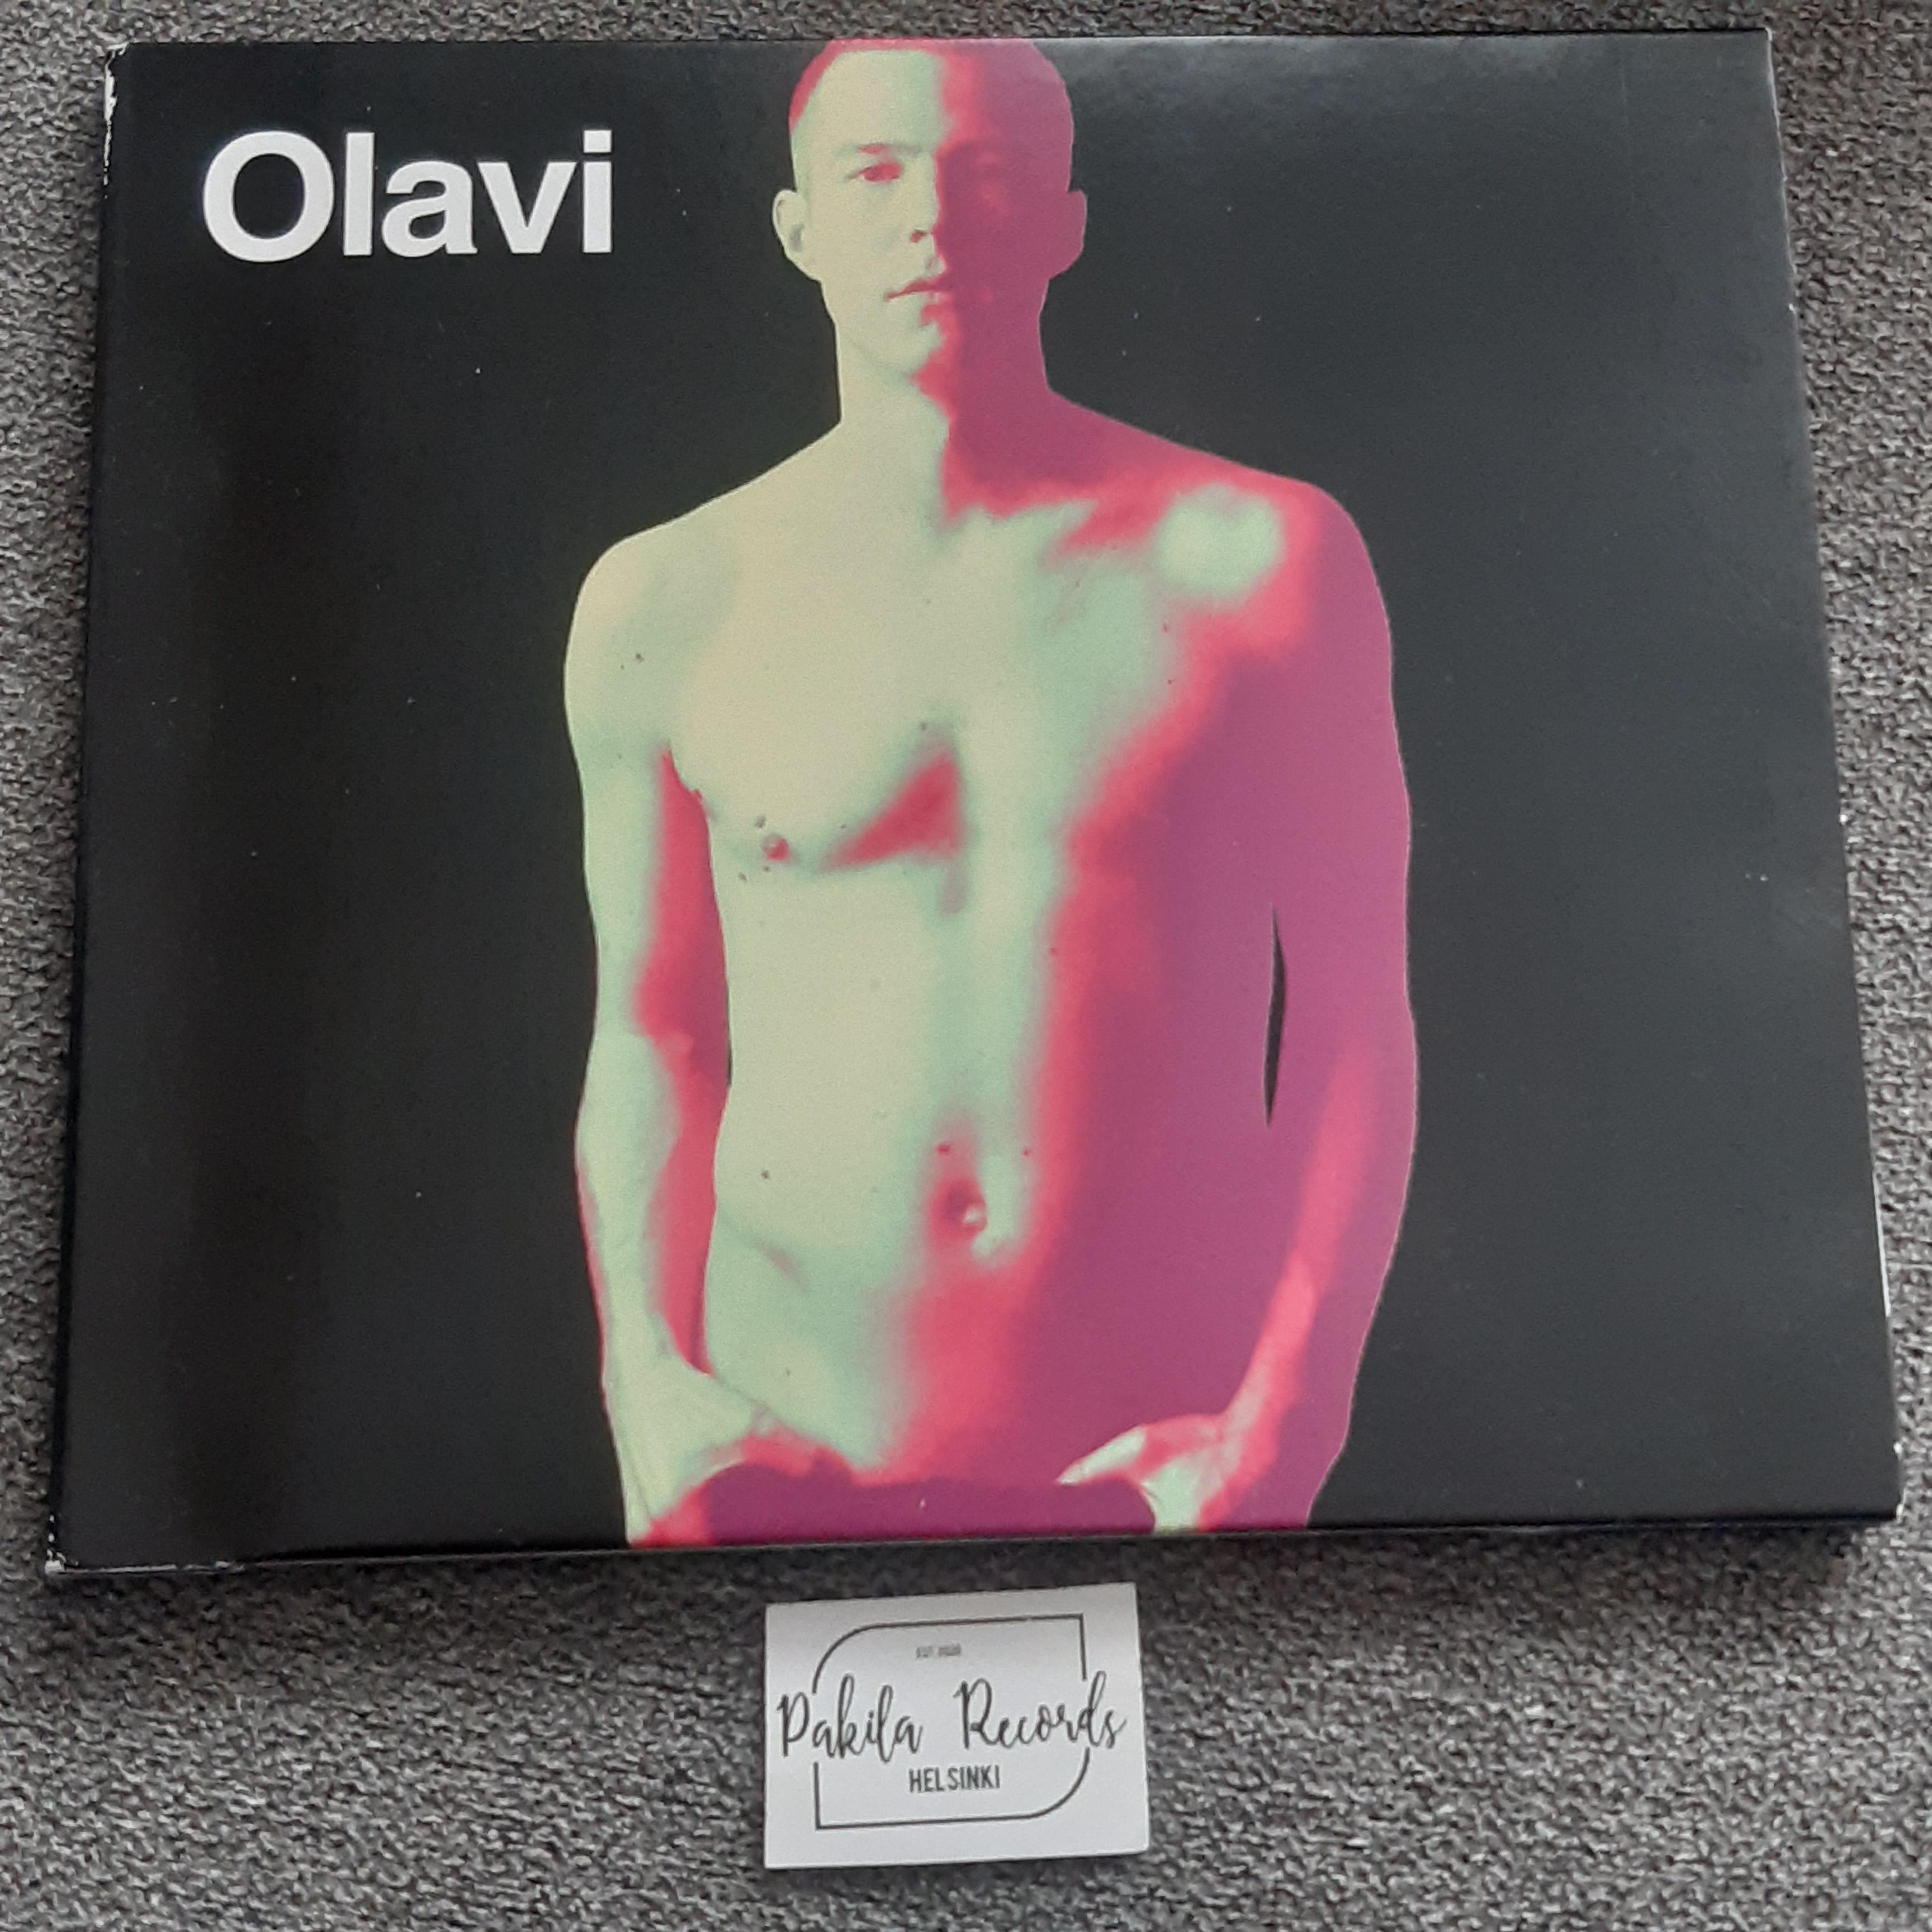 Olavi Uusivirta - Olavi - CD (käytetty)